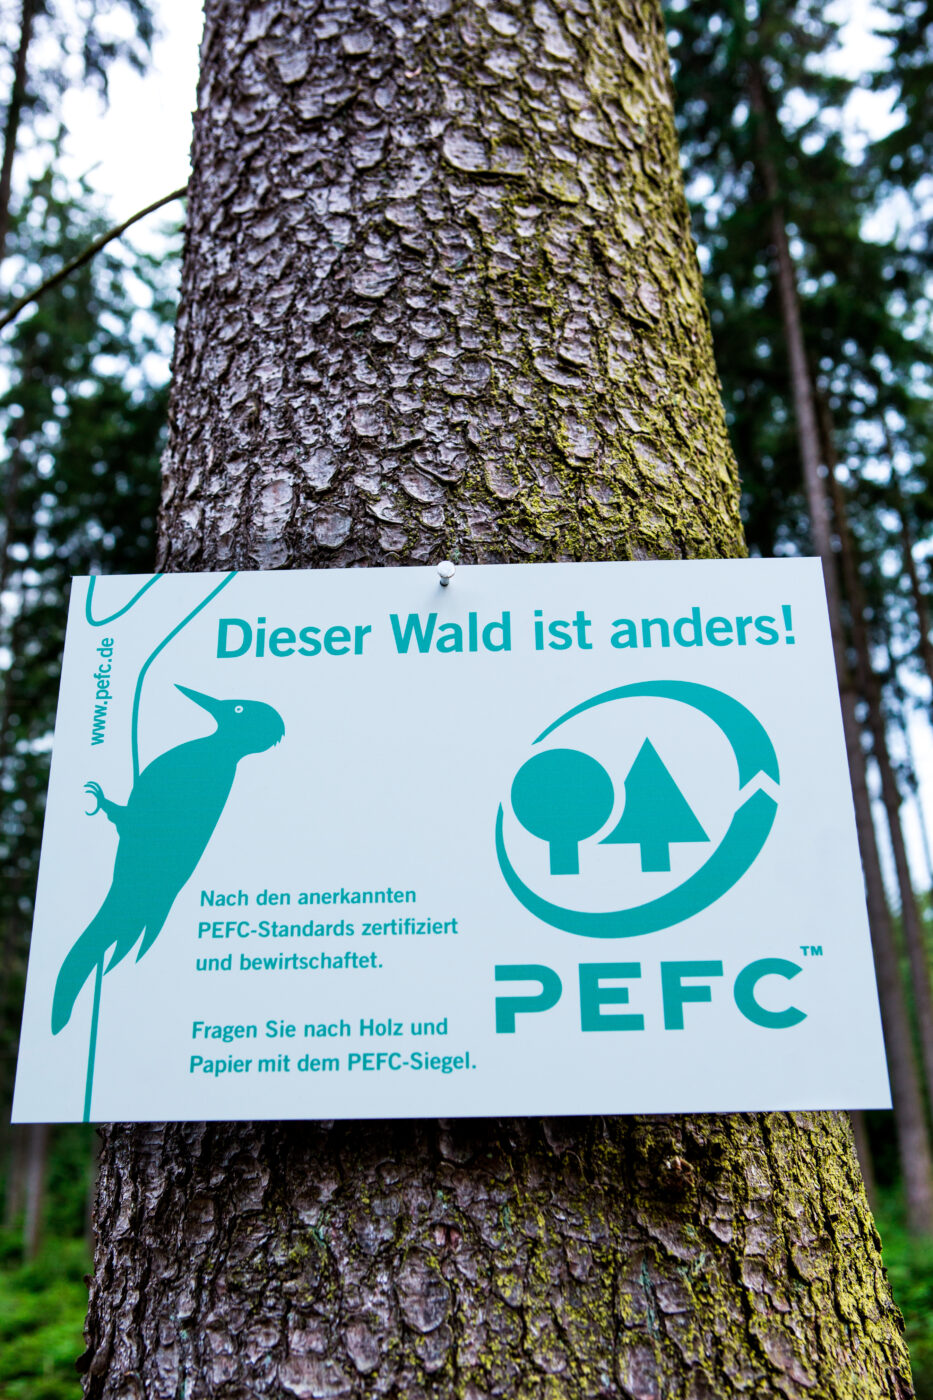 PEFC Deutschland - Dieser Wald ist anders